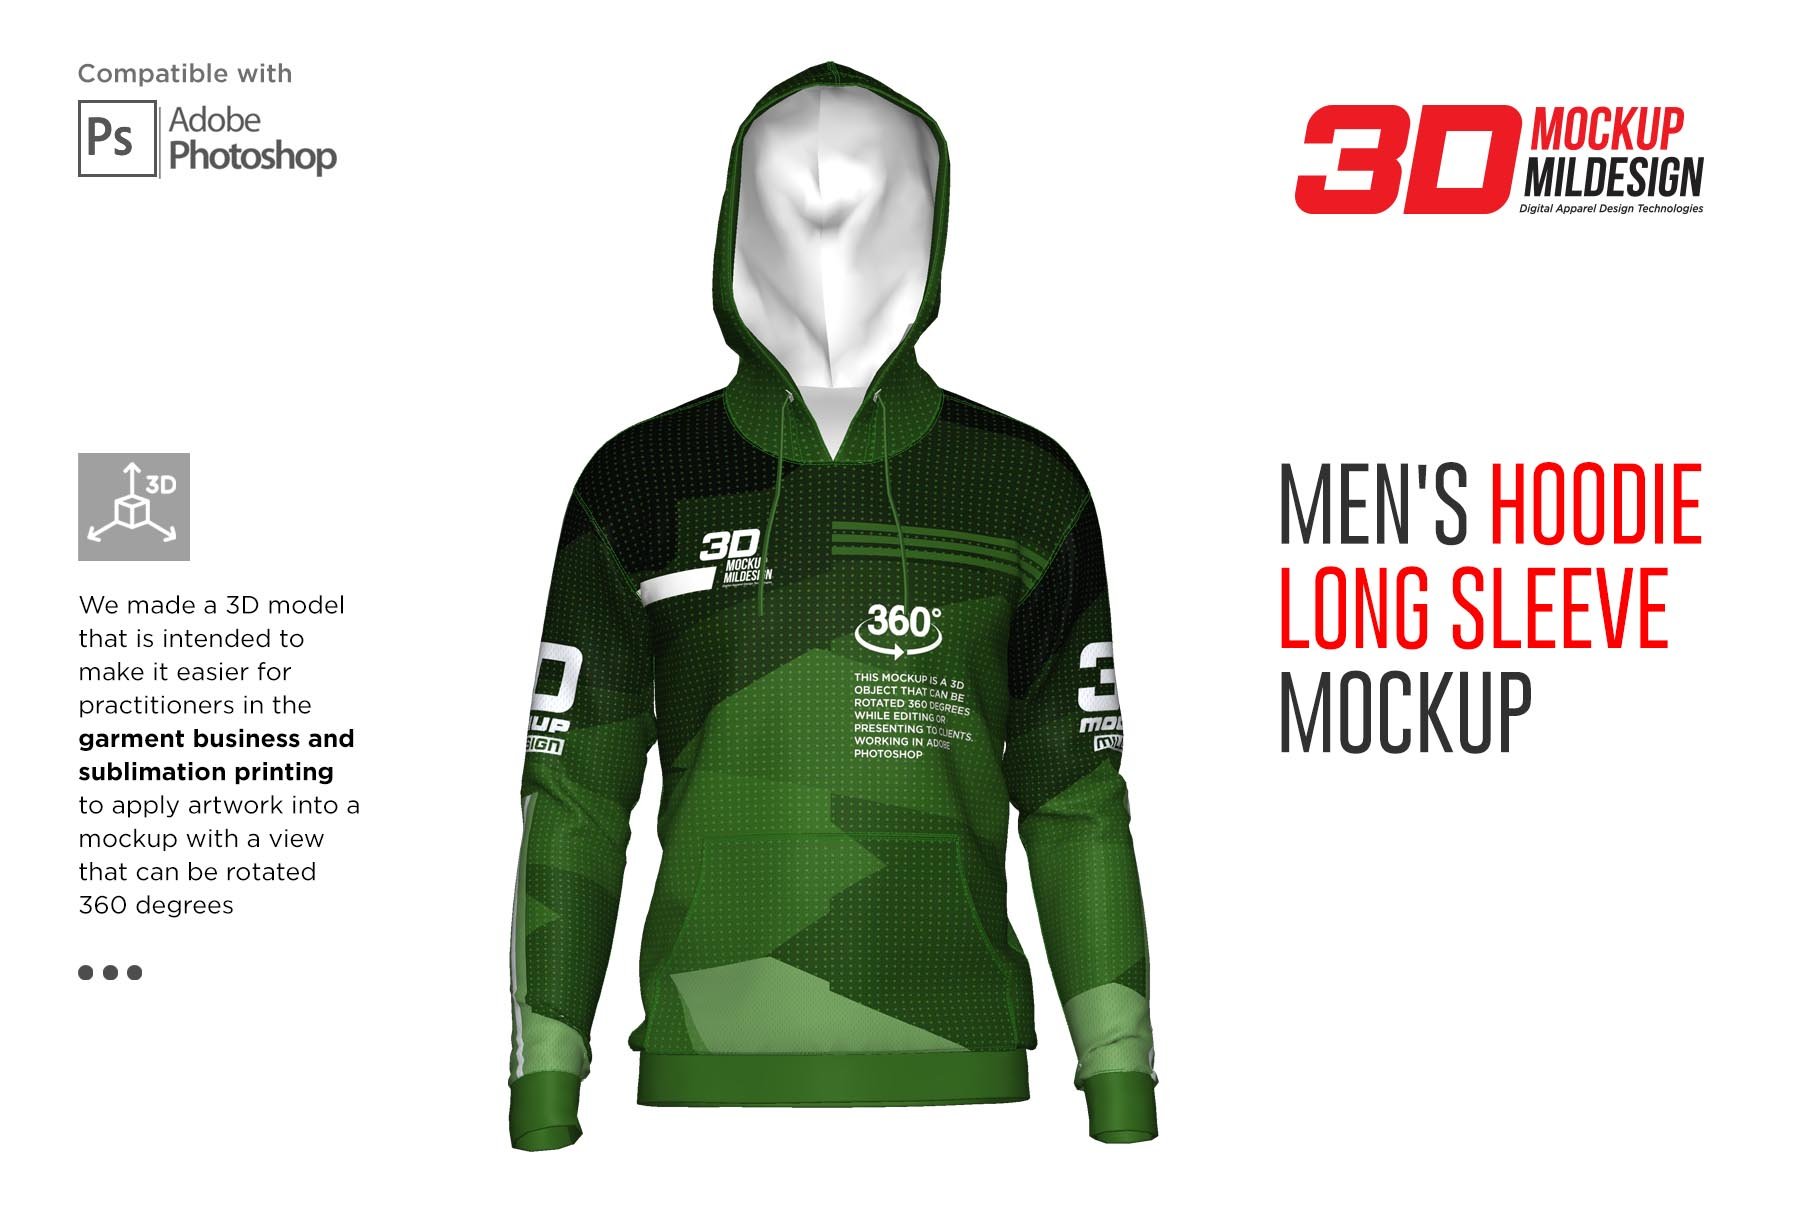 3D Men's Hoodie Long Sleeve Mockup cover image.